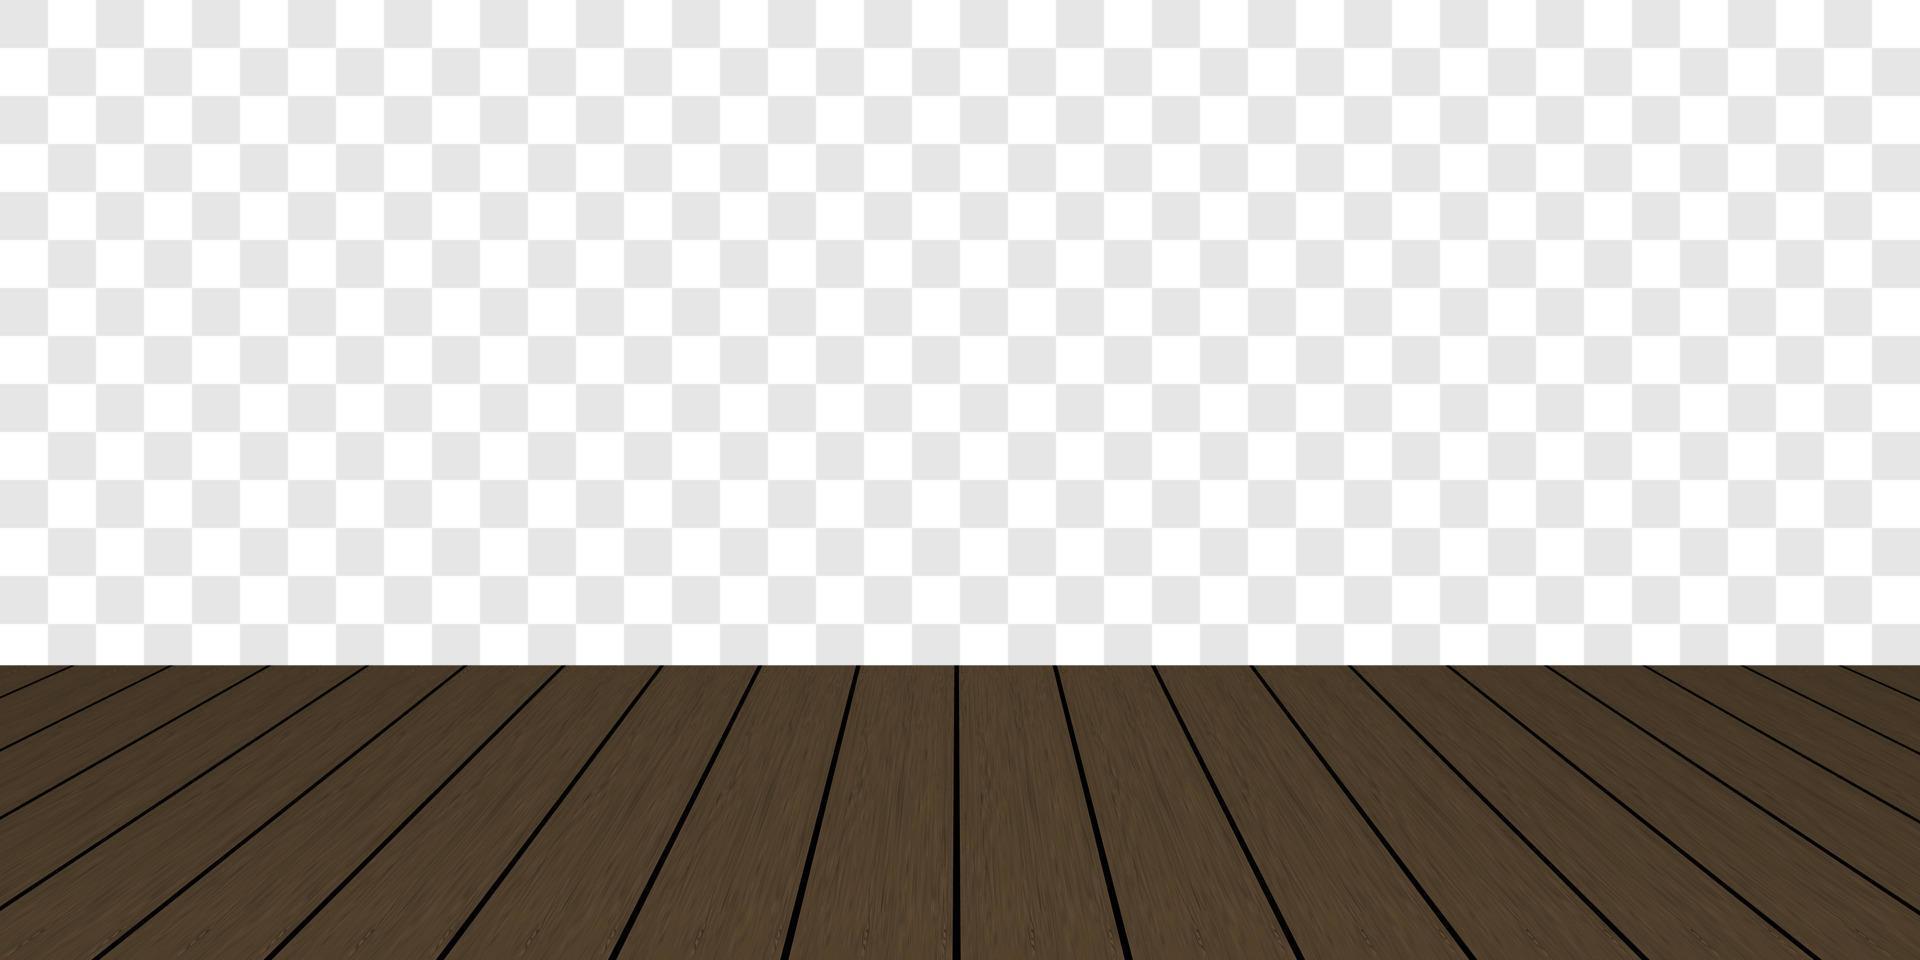 piso de madera marrón oscuro realista y vector de fondo a cuadros gris